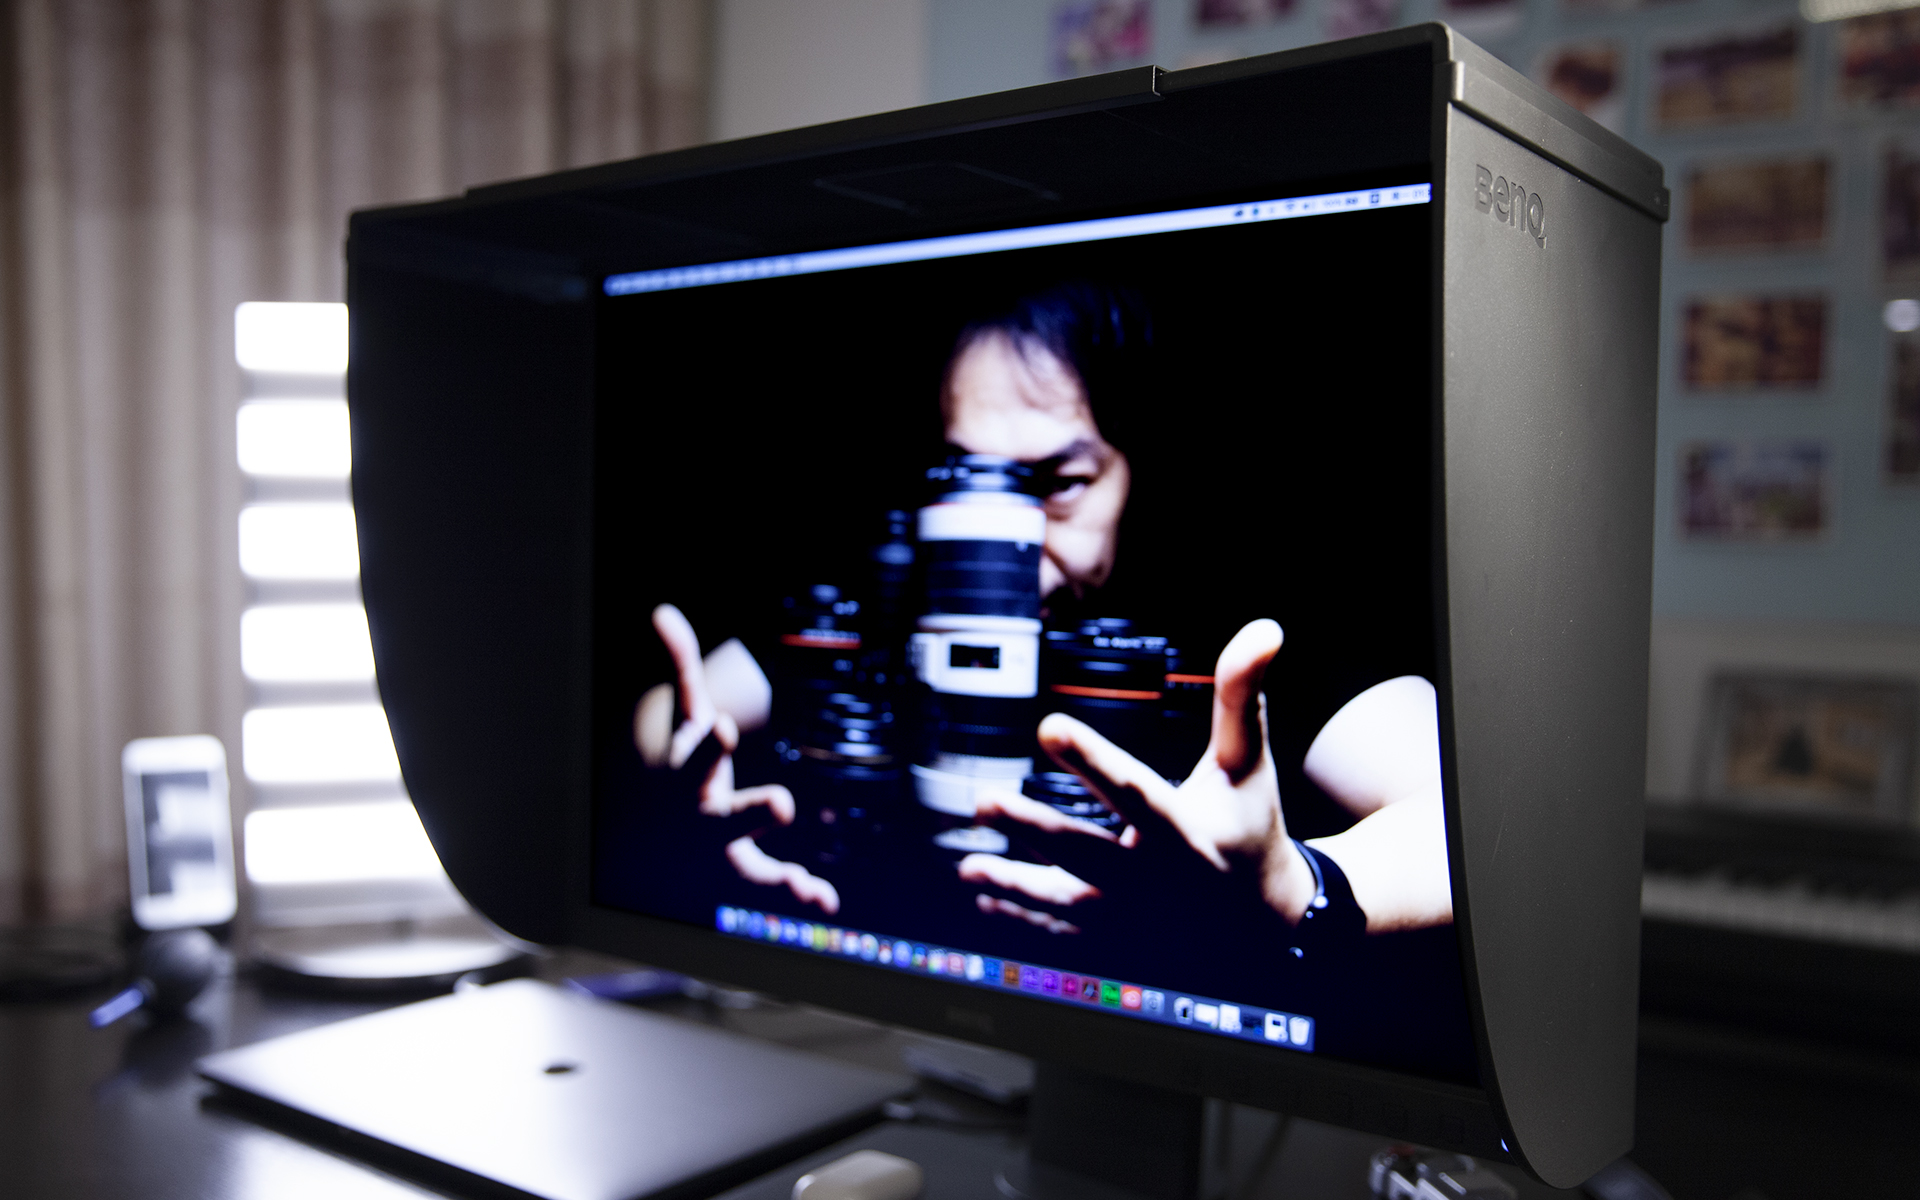 SW240专业摄影显示器使用体验 —— 米多饭香